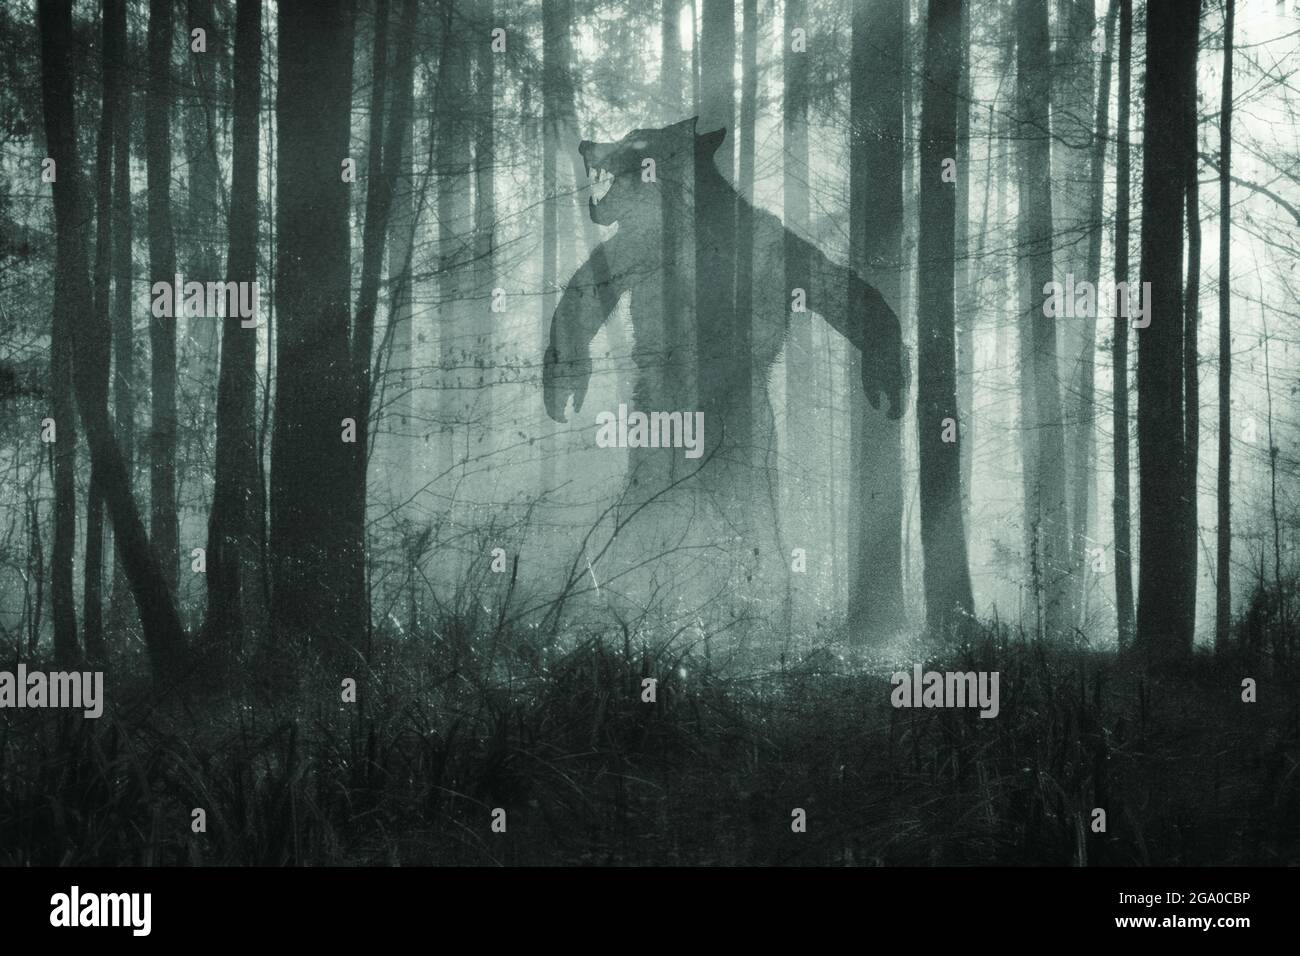 Ein Horrorkonzept... Von einem riesigen Werwolf, der nachts in einem nebligen Winterwald steht. Mit einer Grunge, texturierten Bearbeitung. Stockfoto